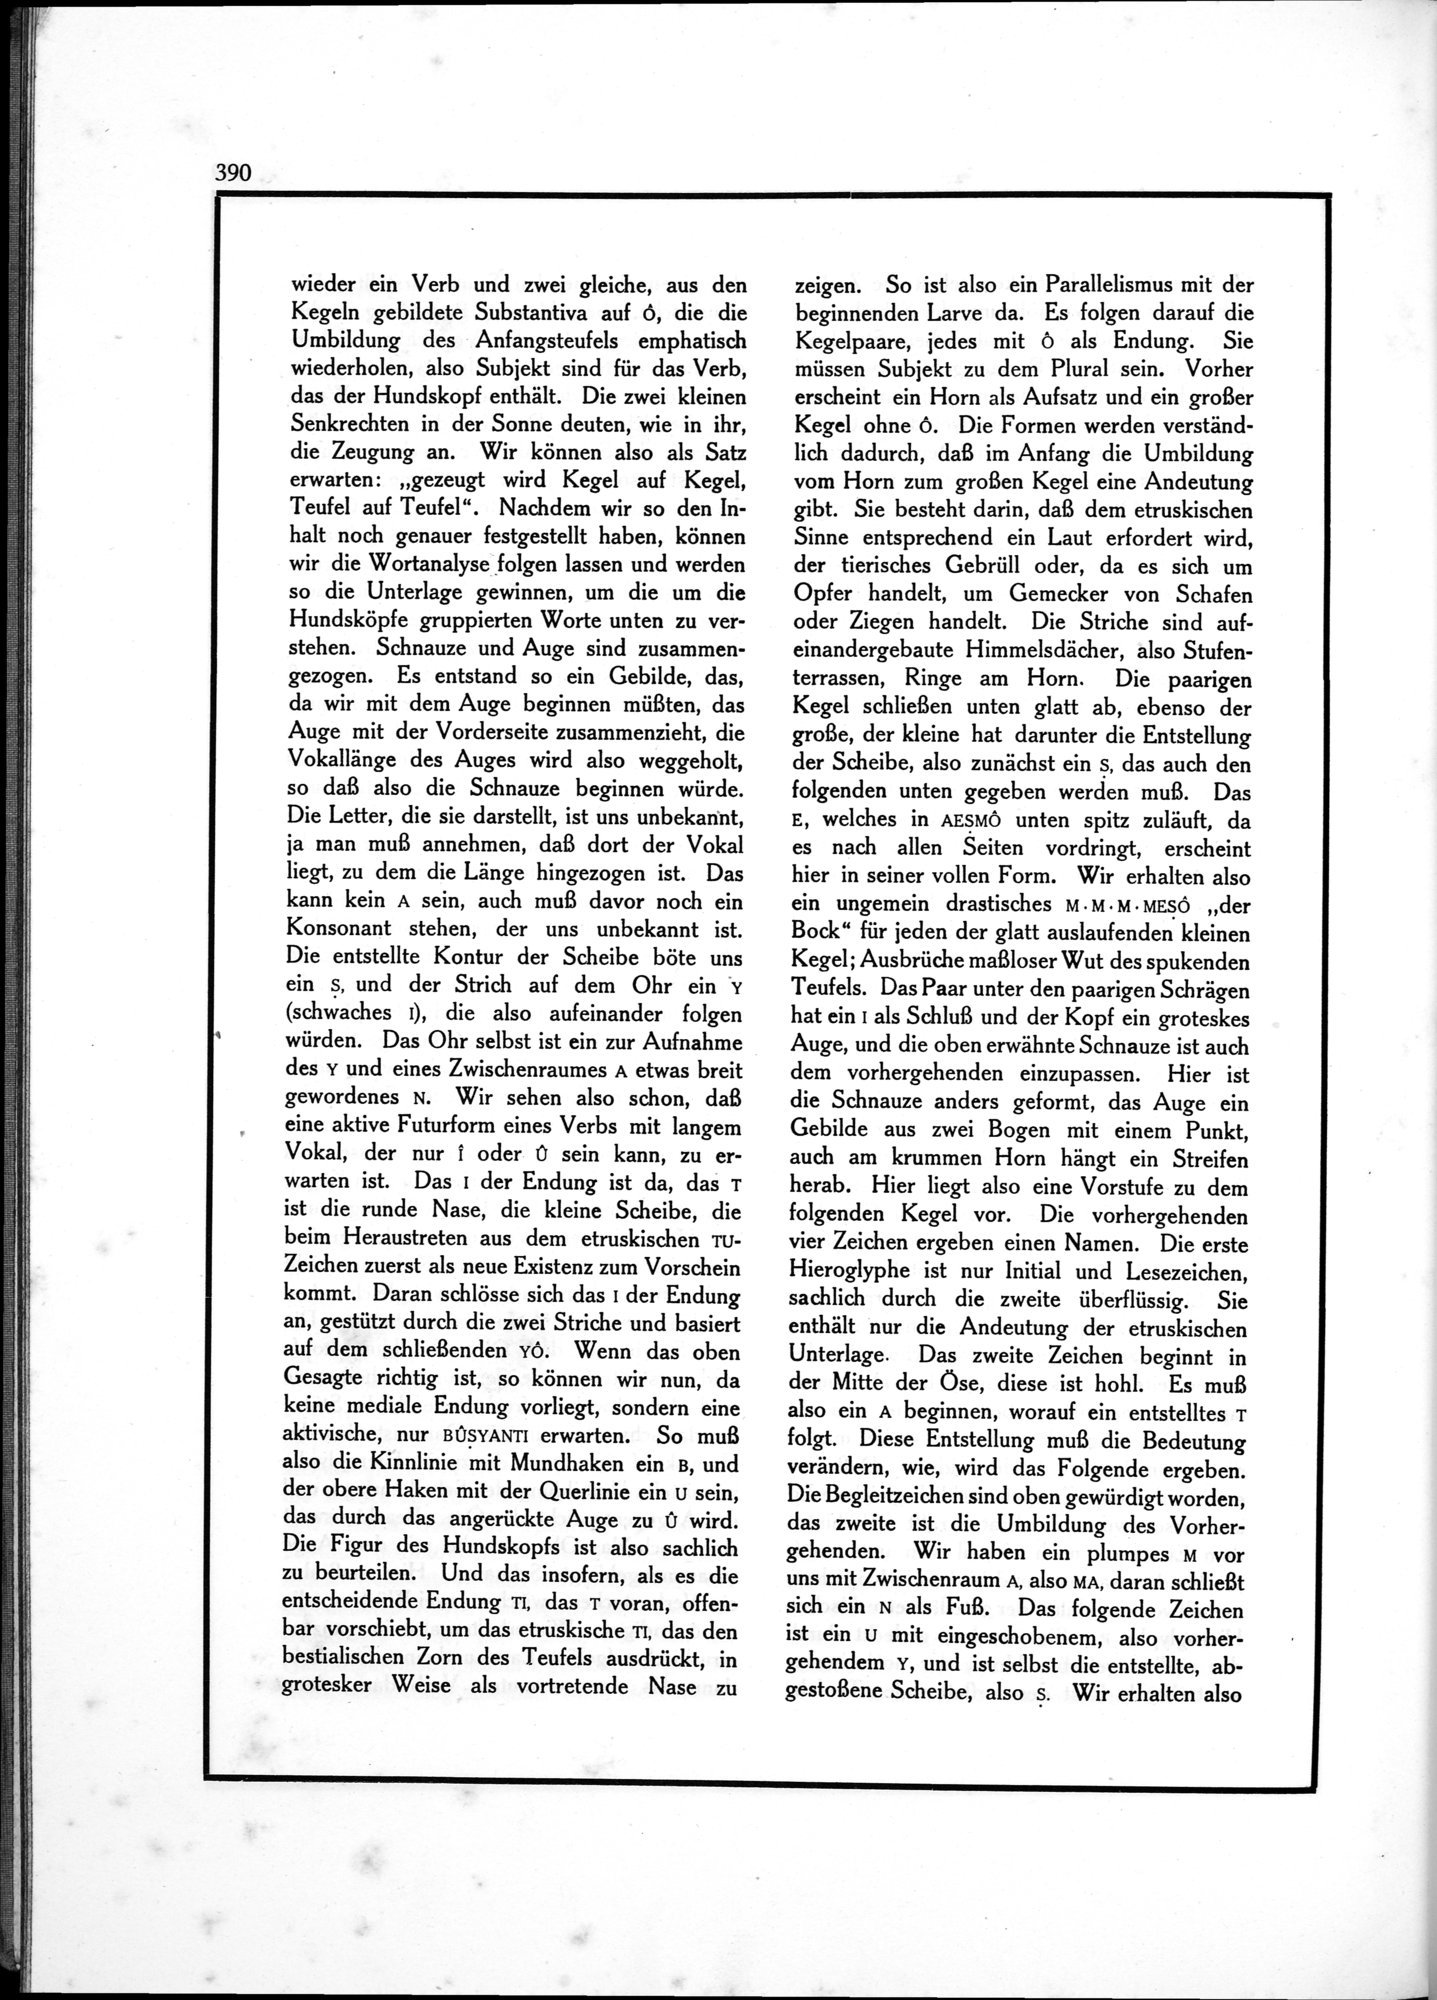 Die Teufel des Avesta und Ihre Beziehungen zur Ikonographie des Buddhismus Zentral-Asiens : vol.1 / Page 394 (Grayscale High Resolution Image)